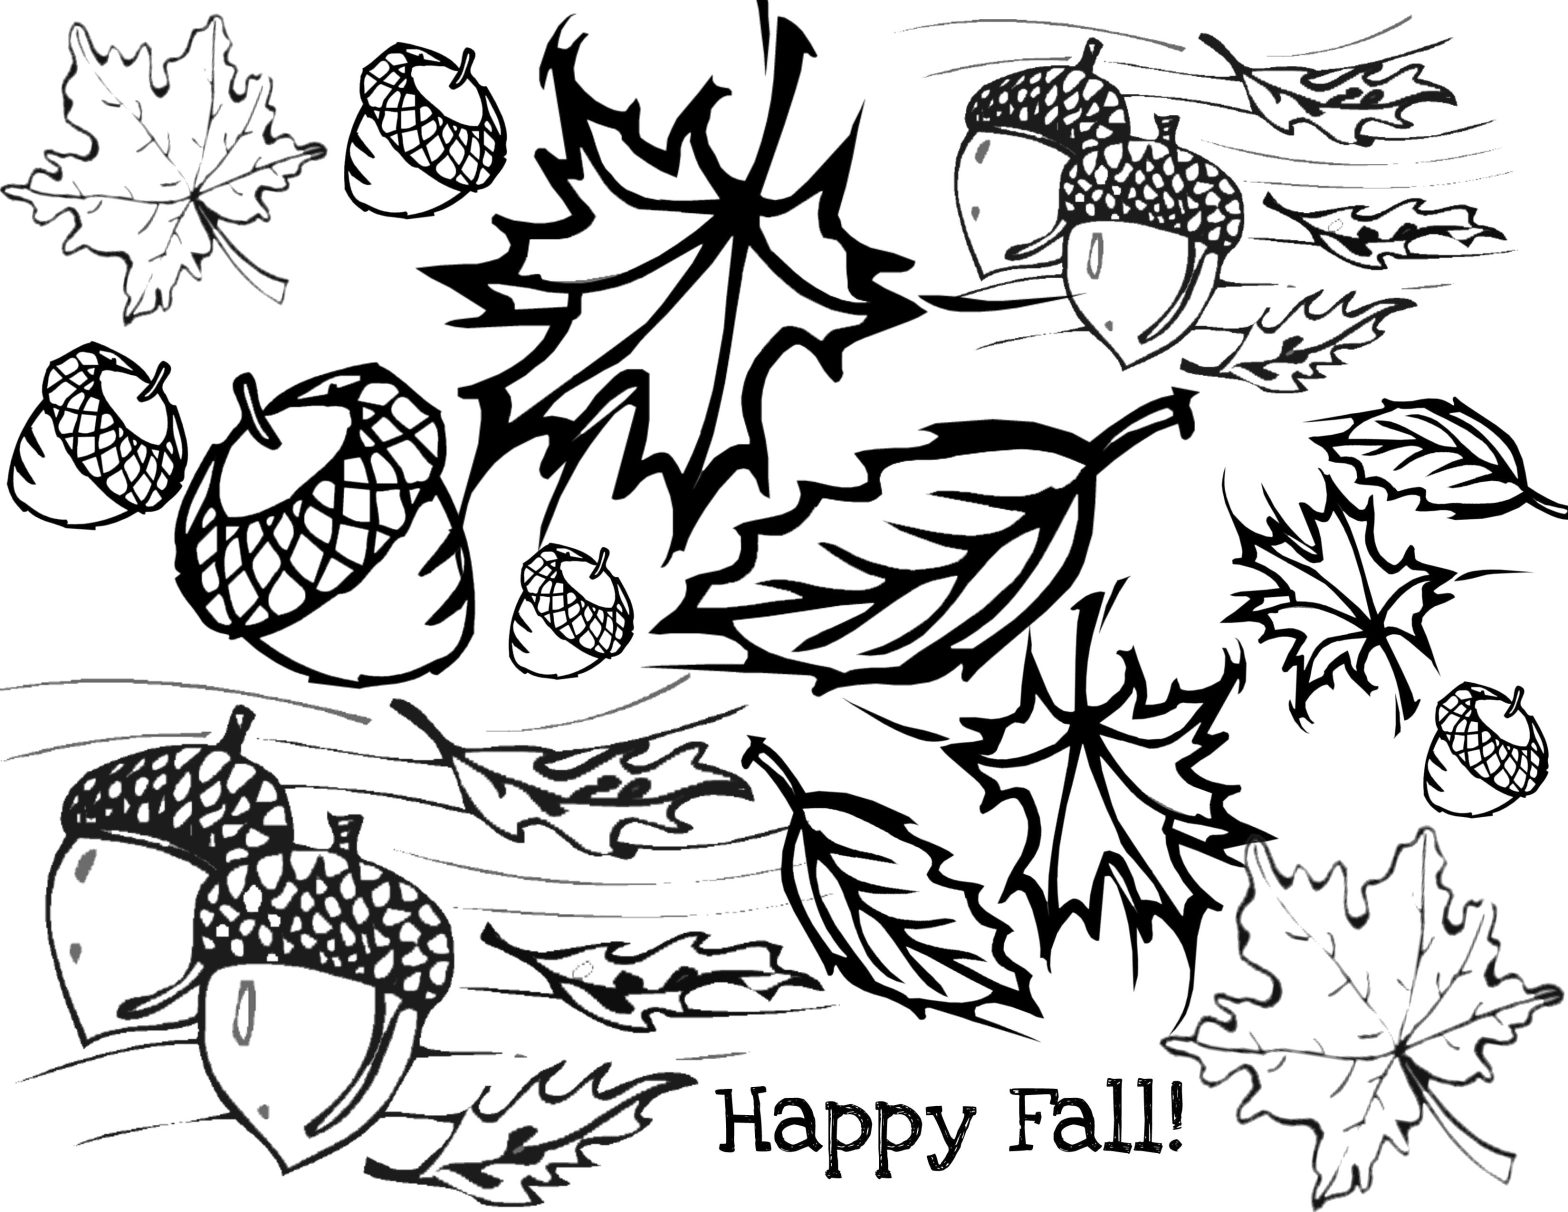 Раскраска на тему Осени с изображением листьев и животных (Осень, креативные, задания)